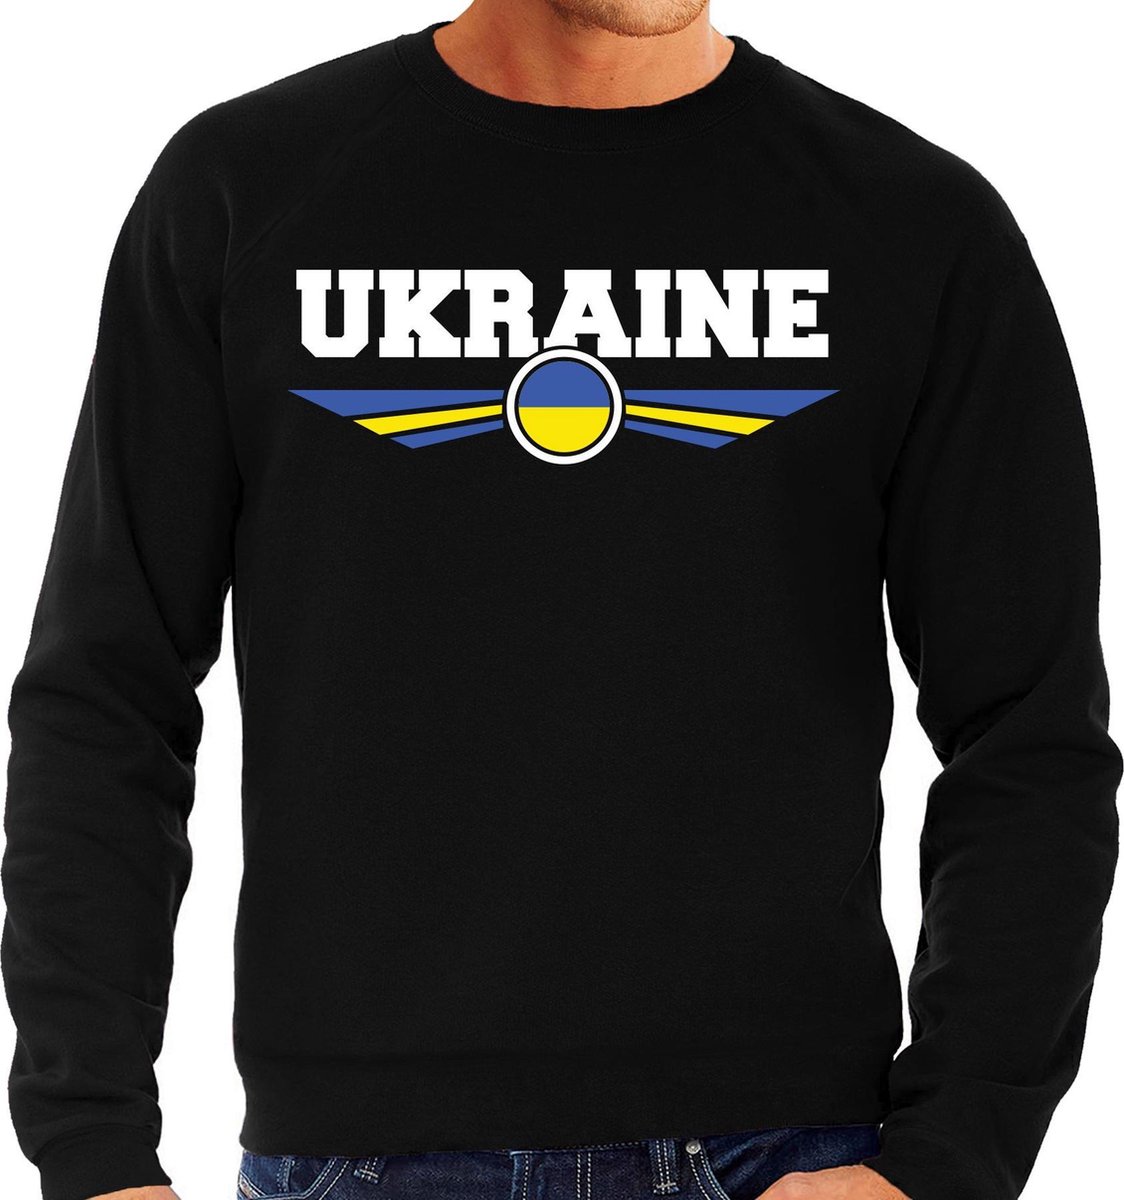 Oekraine / Ukraine landen sweater / trui zwart heren M